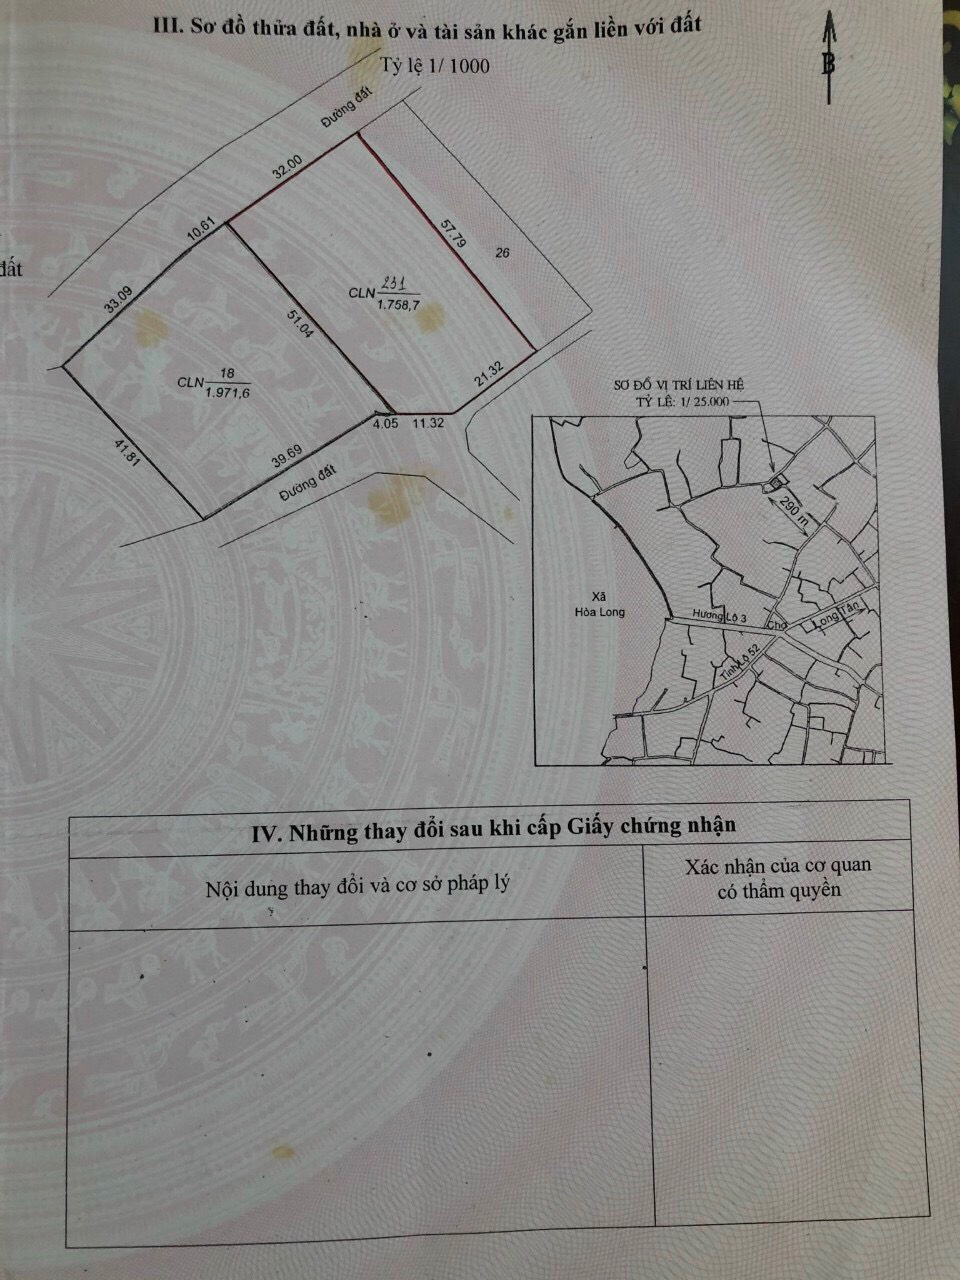 Cần bán 1759 m² đất 2 mặt tiền đường nhựa xã Long Phước, Thành Phố Bà Rịa.